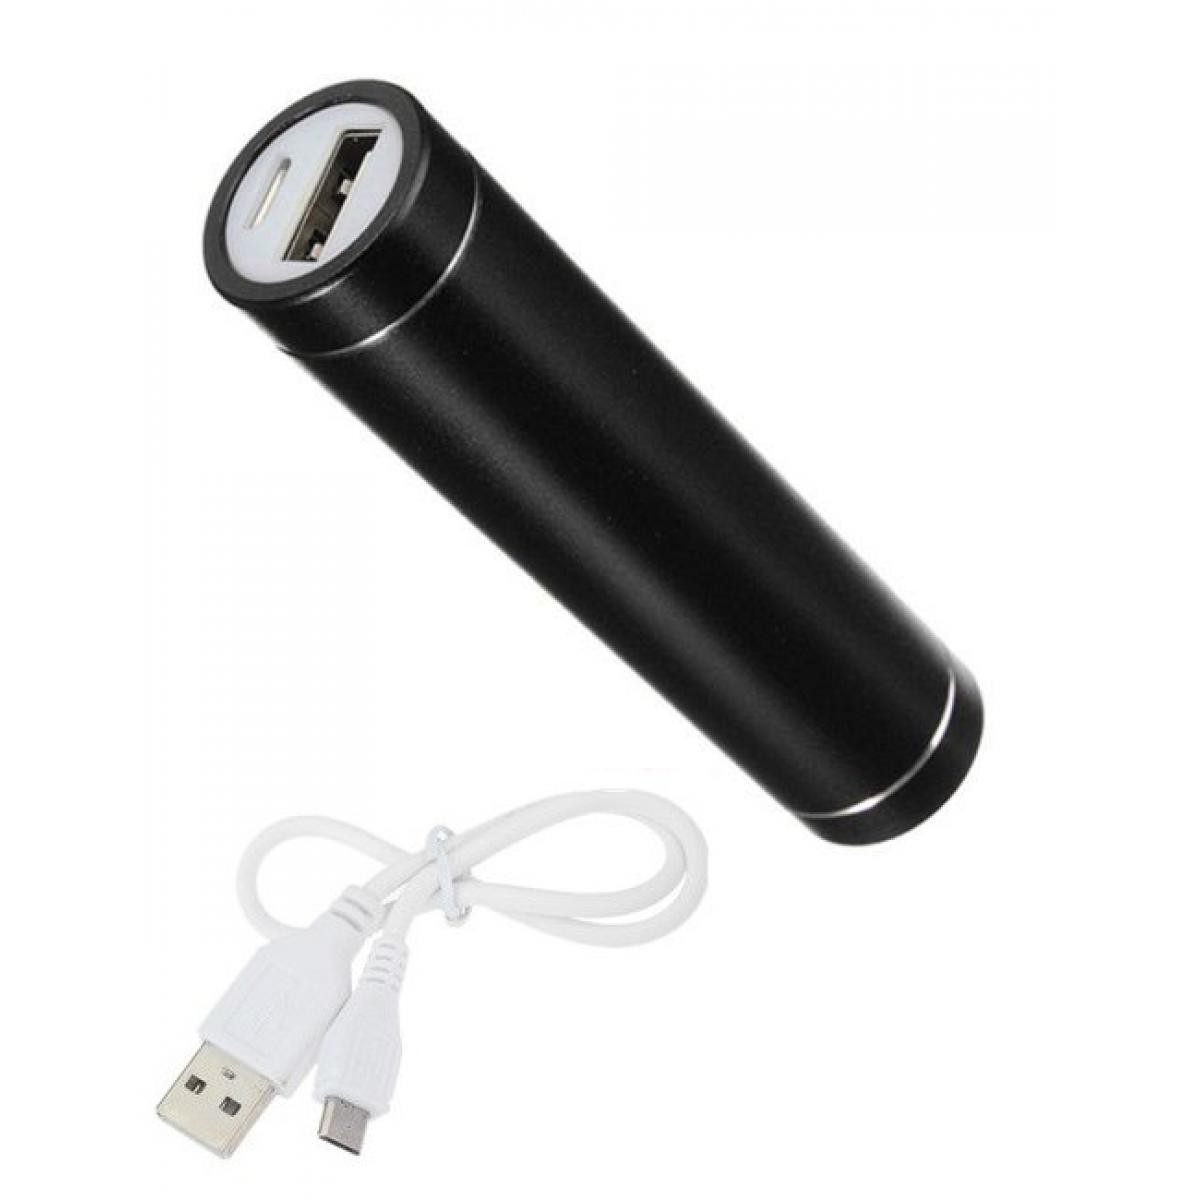 Shot - Batterie Chargeur Externe pour HUAWEI P40 Power Bank 2600mAh avec Cable USB/Mirco USB Secours Telephone (NOIR) - Chargeur secteur téléphone